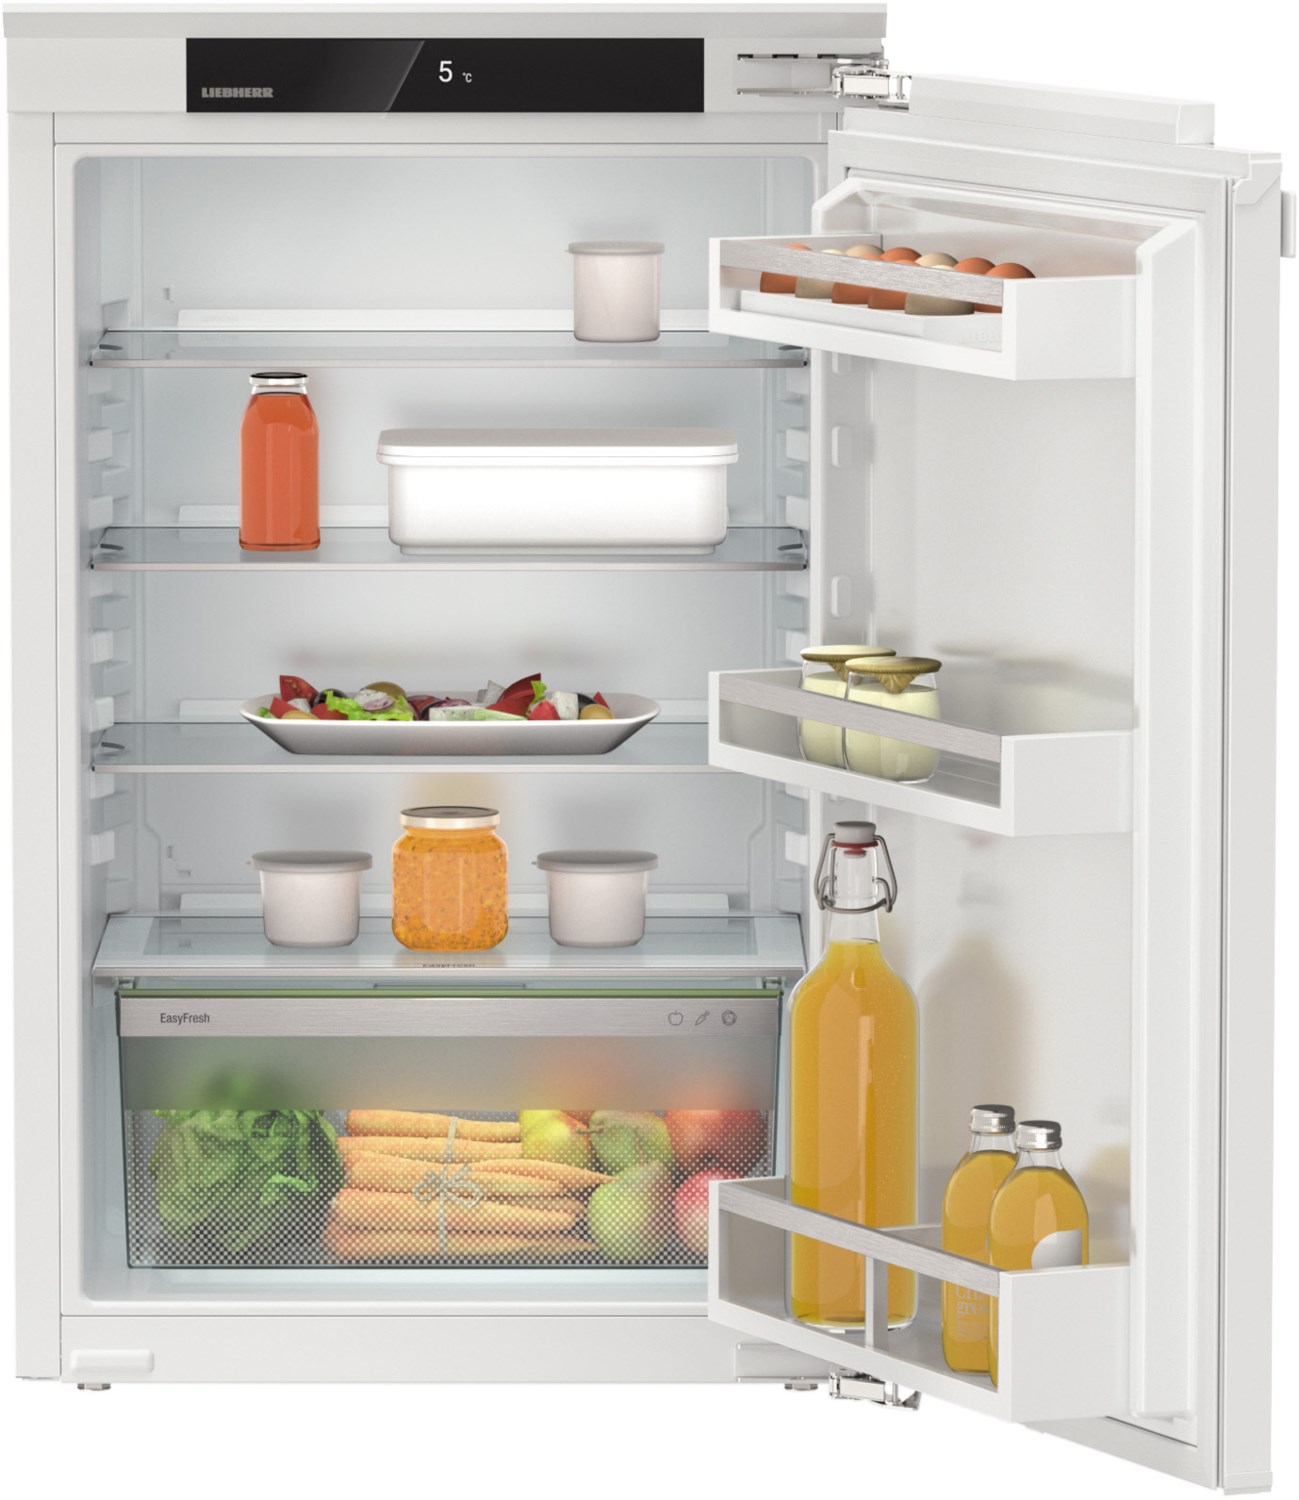 IRd 3900-20 Einbau-Kühlschrank weiß / D